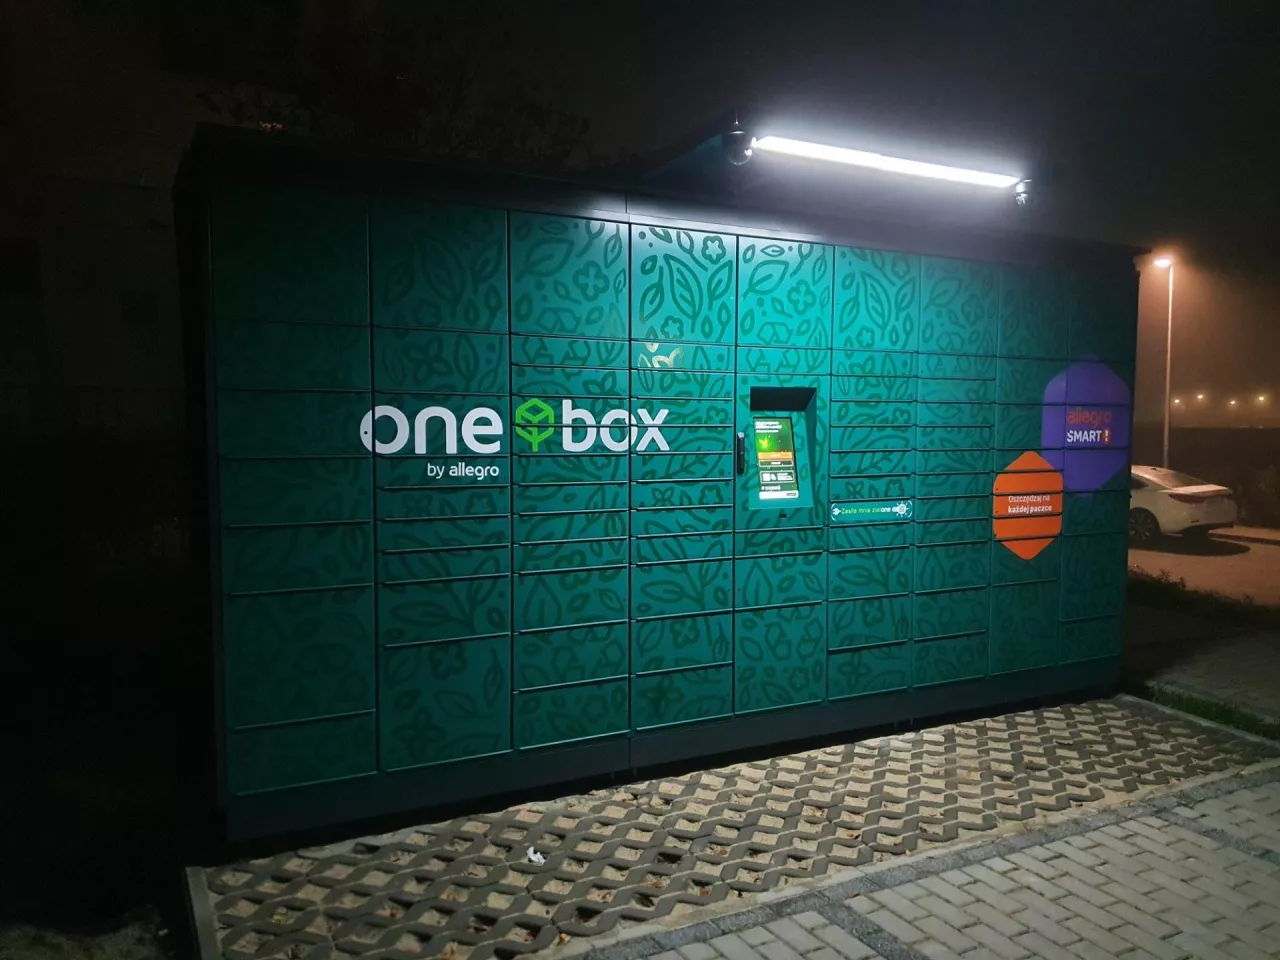 Automat paczkowy One Box by Allegro (fot. wiadomoscihandlowe.pl)